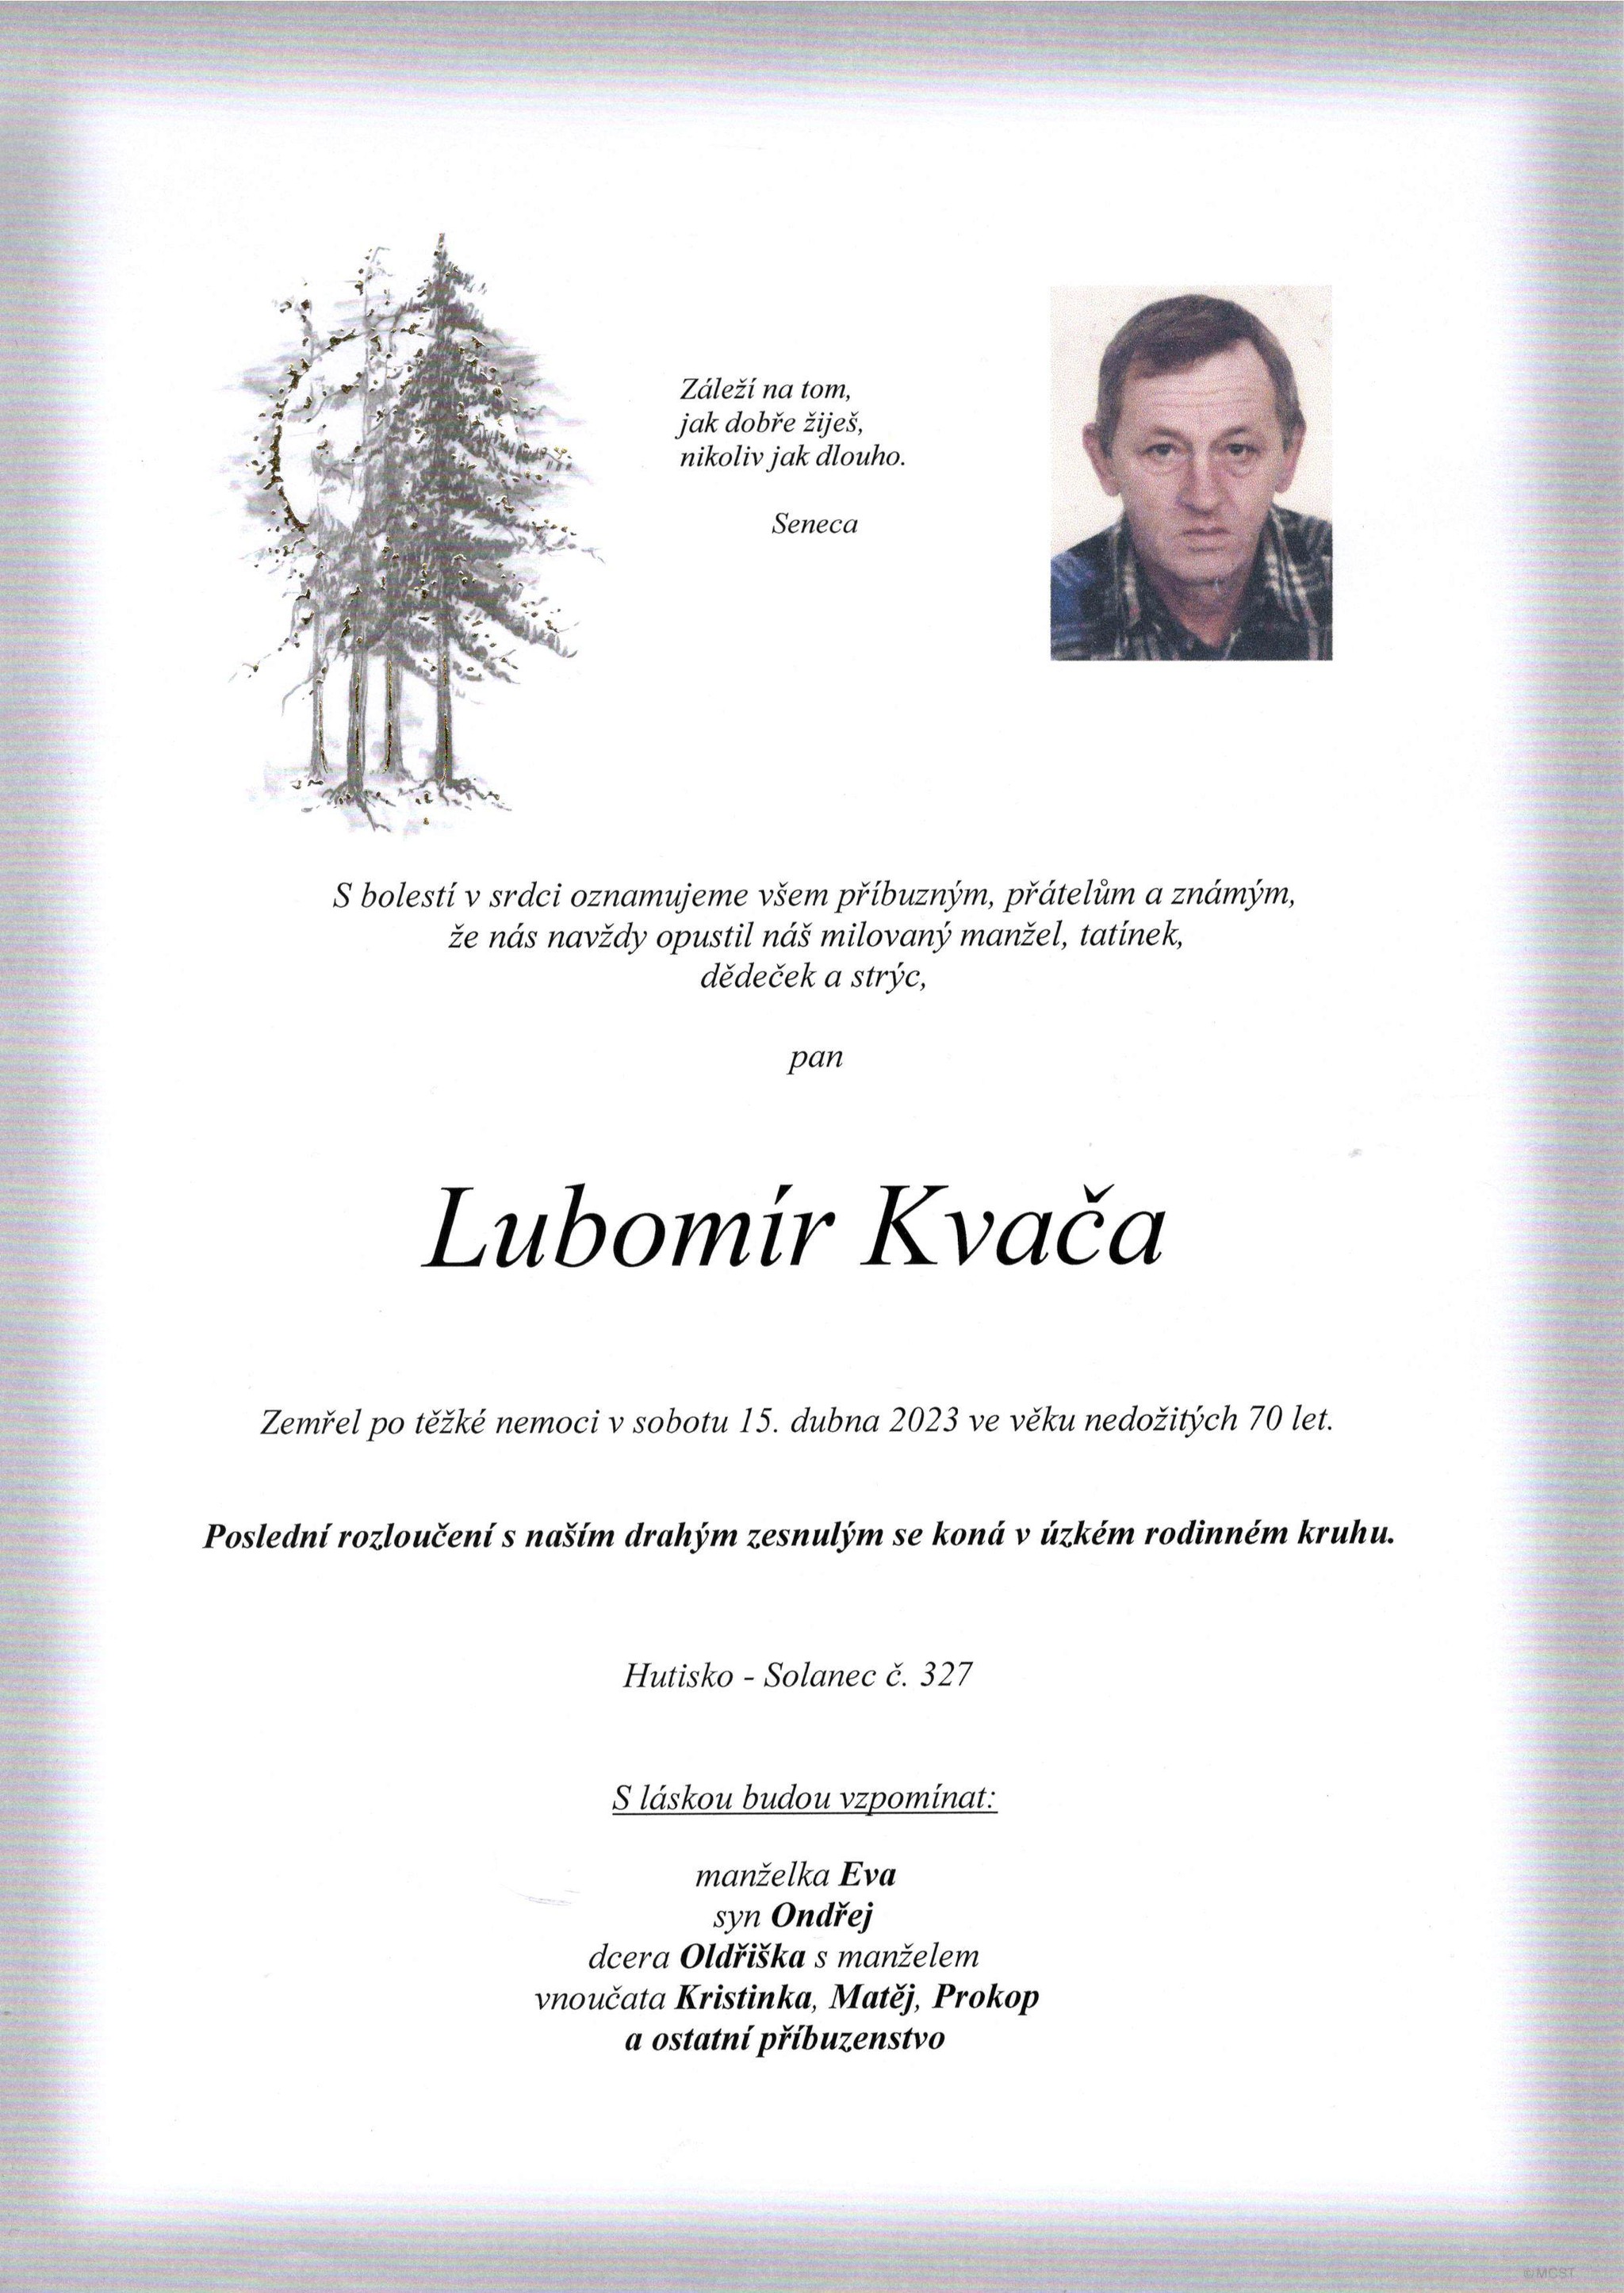 Lubomír Kvača